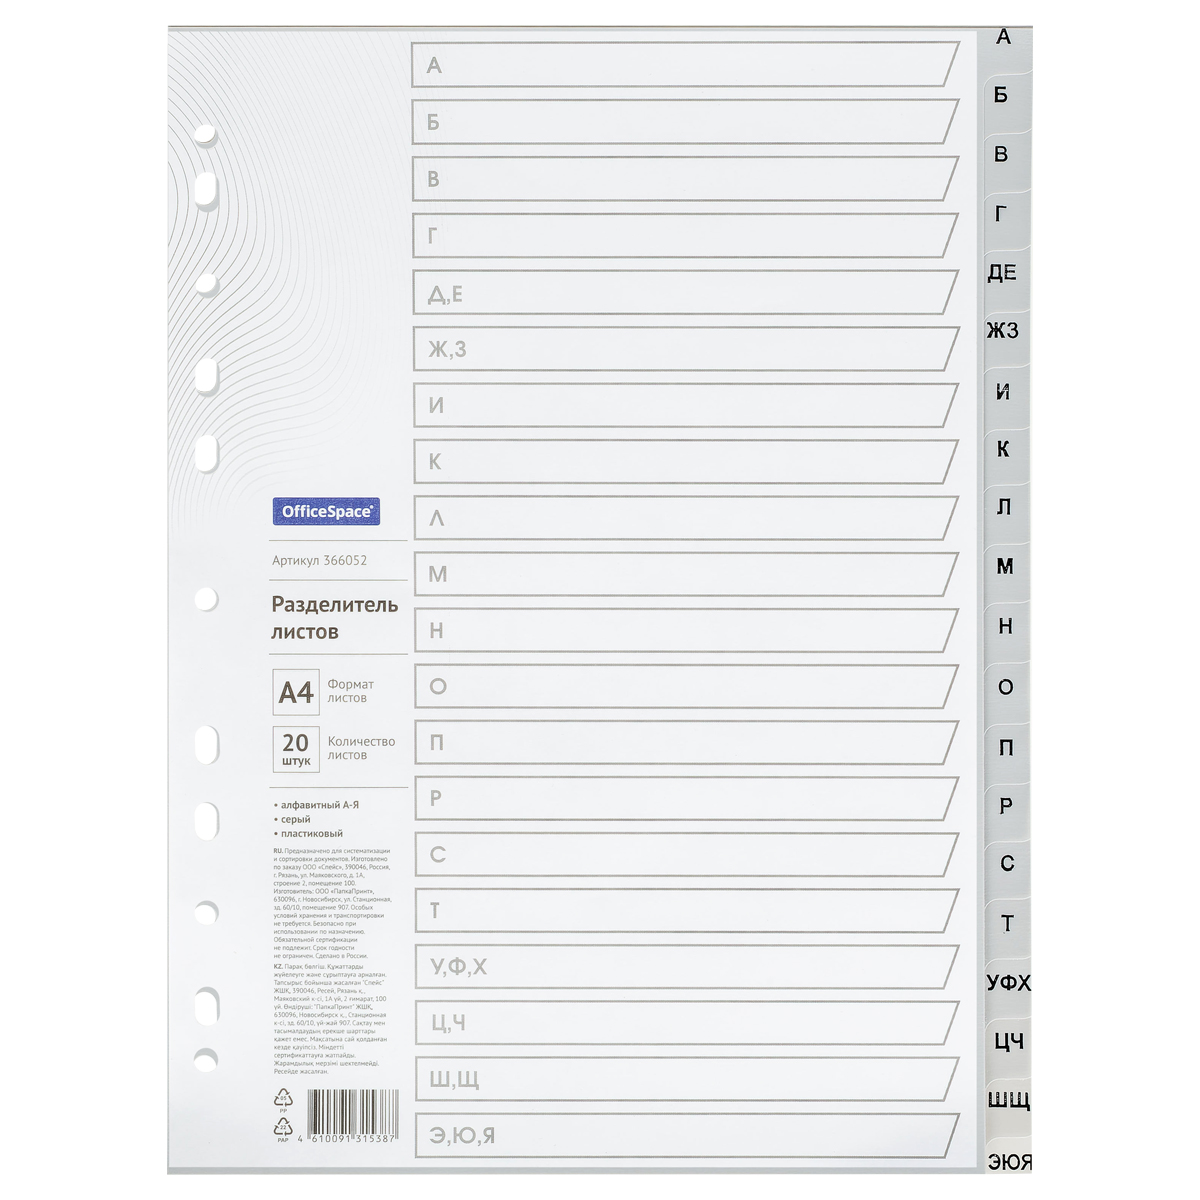 Разделитель листов OfficeSpace А4, 20 листов, алфавитный А-Я, серый, пластиковый